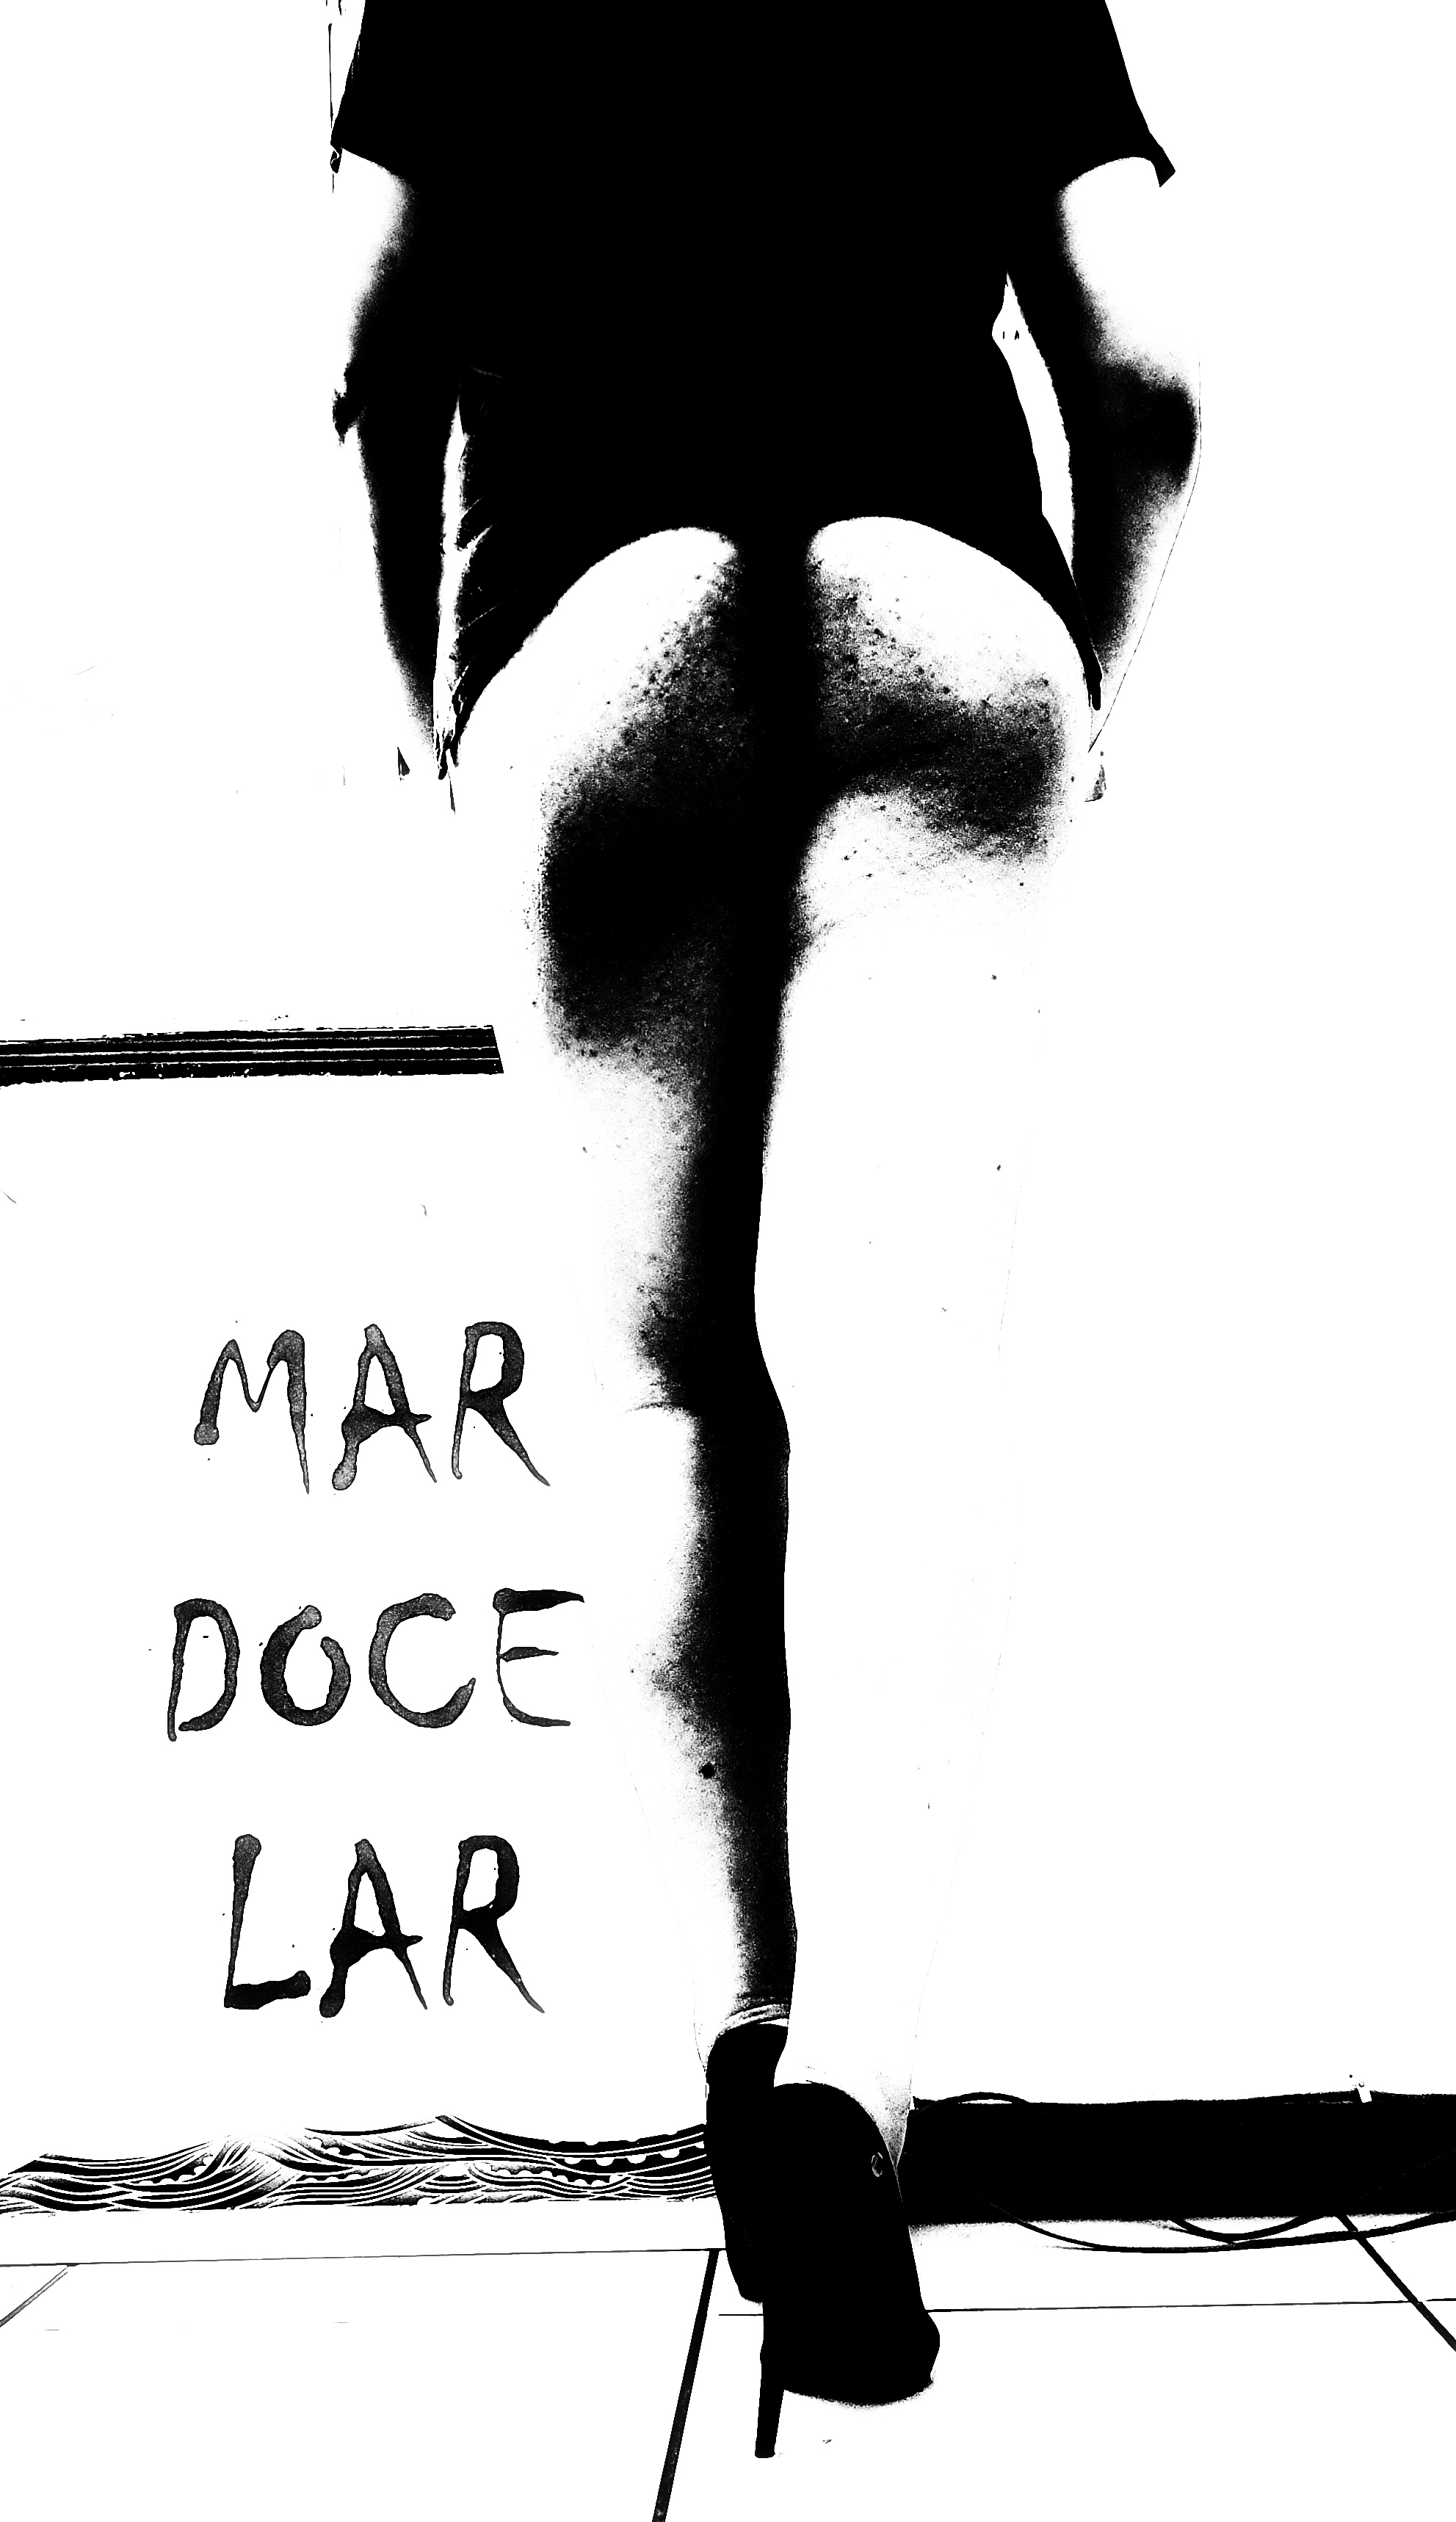 Slhueta de costas, mostrando longas pernas, calçando sapatos de salto, ao lado de uma placa onde se lê "Mar Doce Lar"